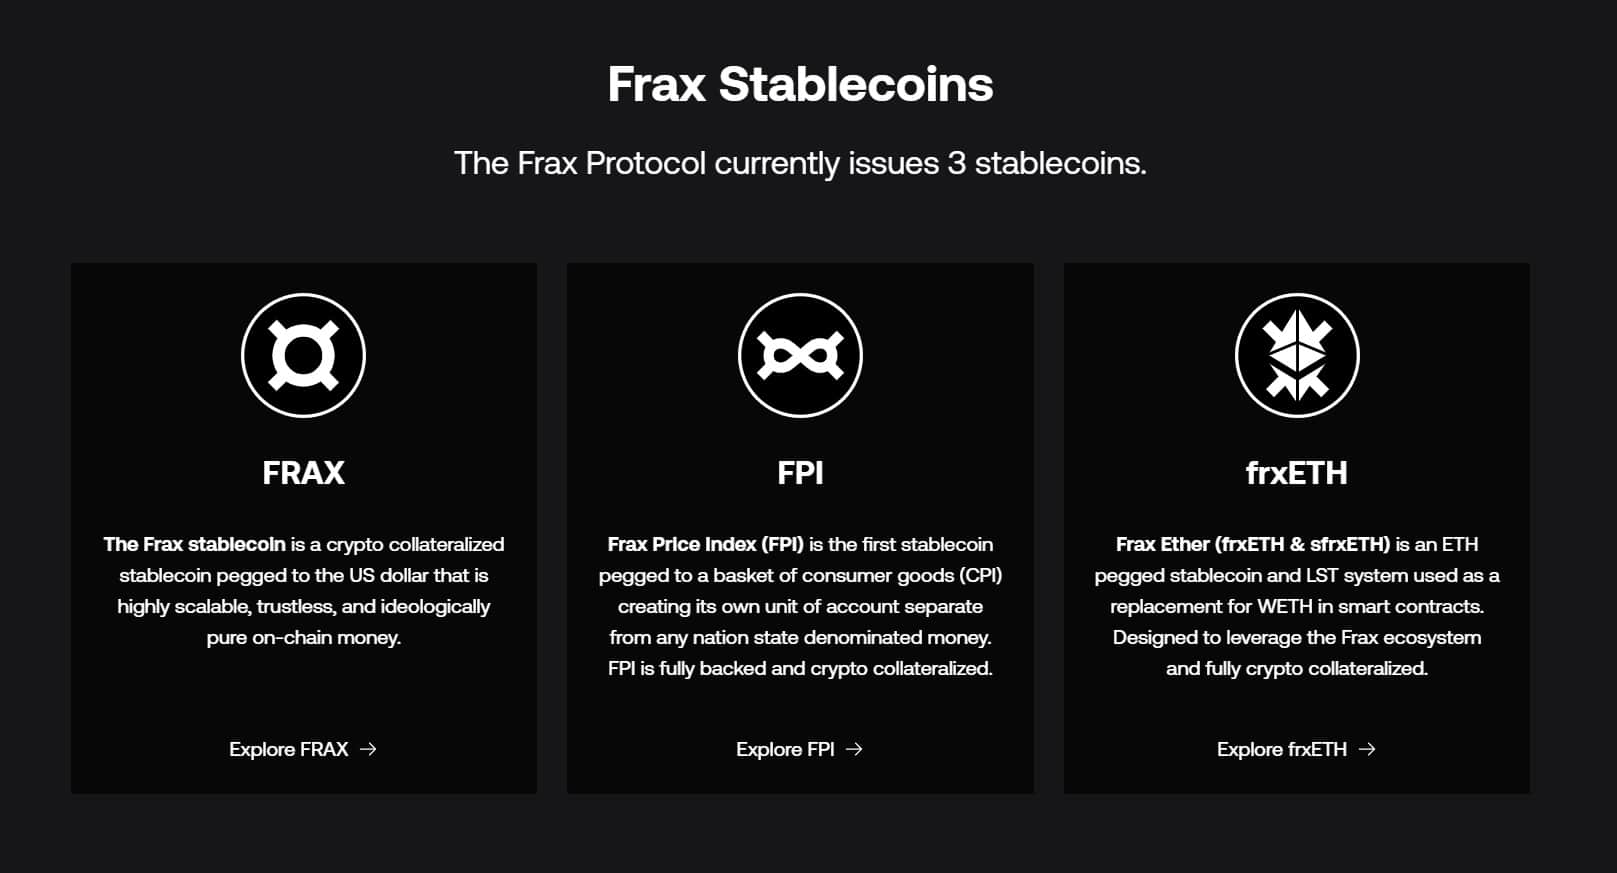 Frax Stablecoins